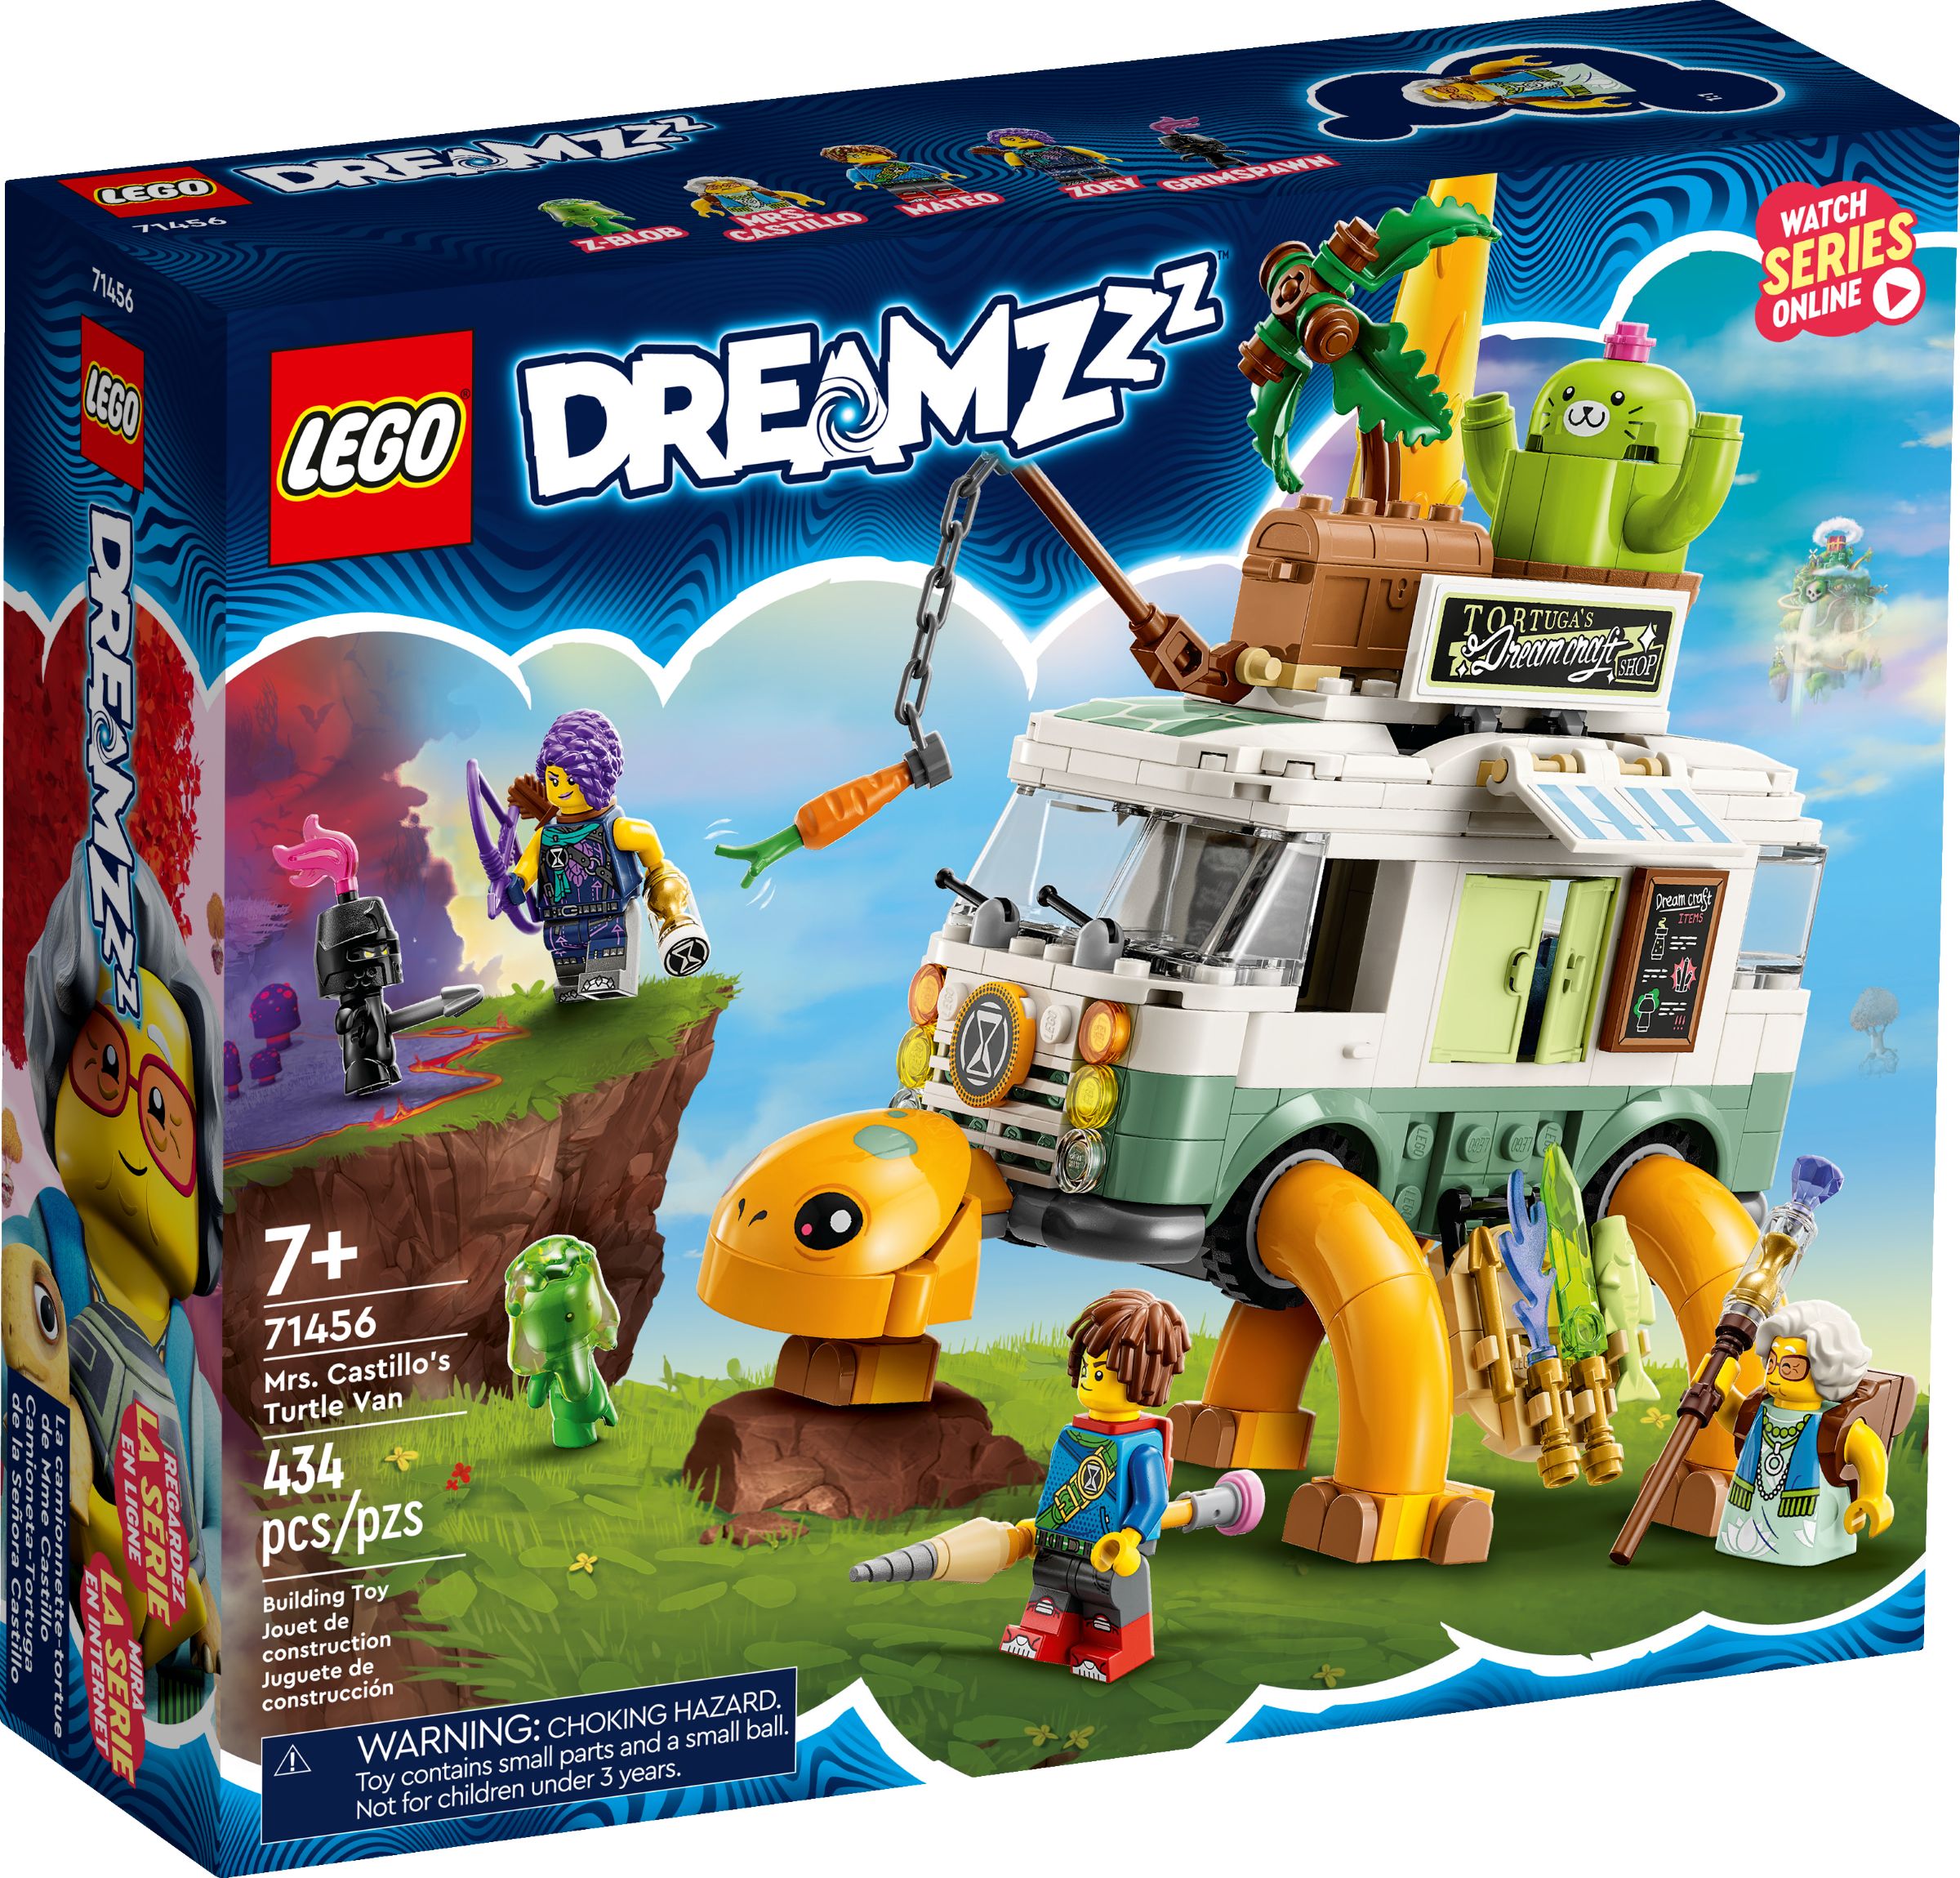 LEGO Dreamzzz 5008137 Traumwelt Paket LEGO_71456_alt1.jpg